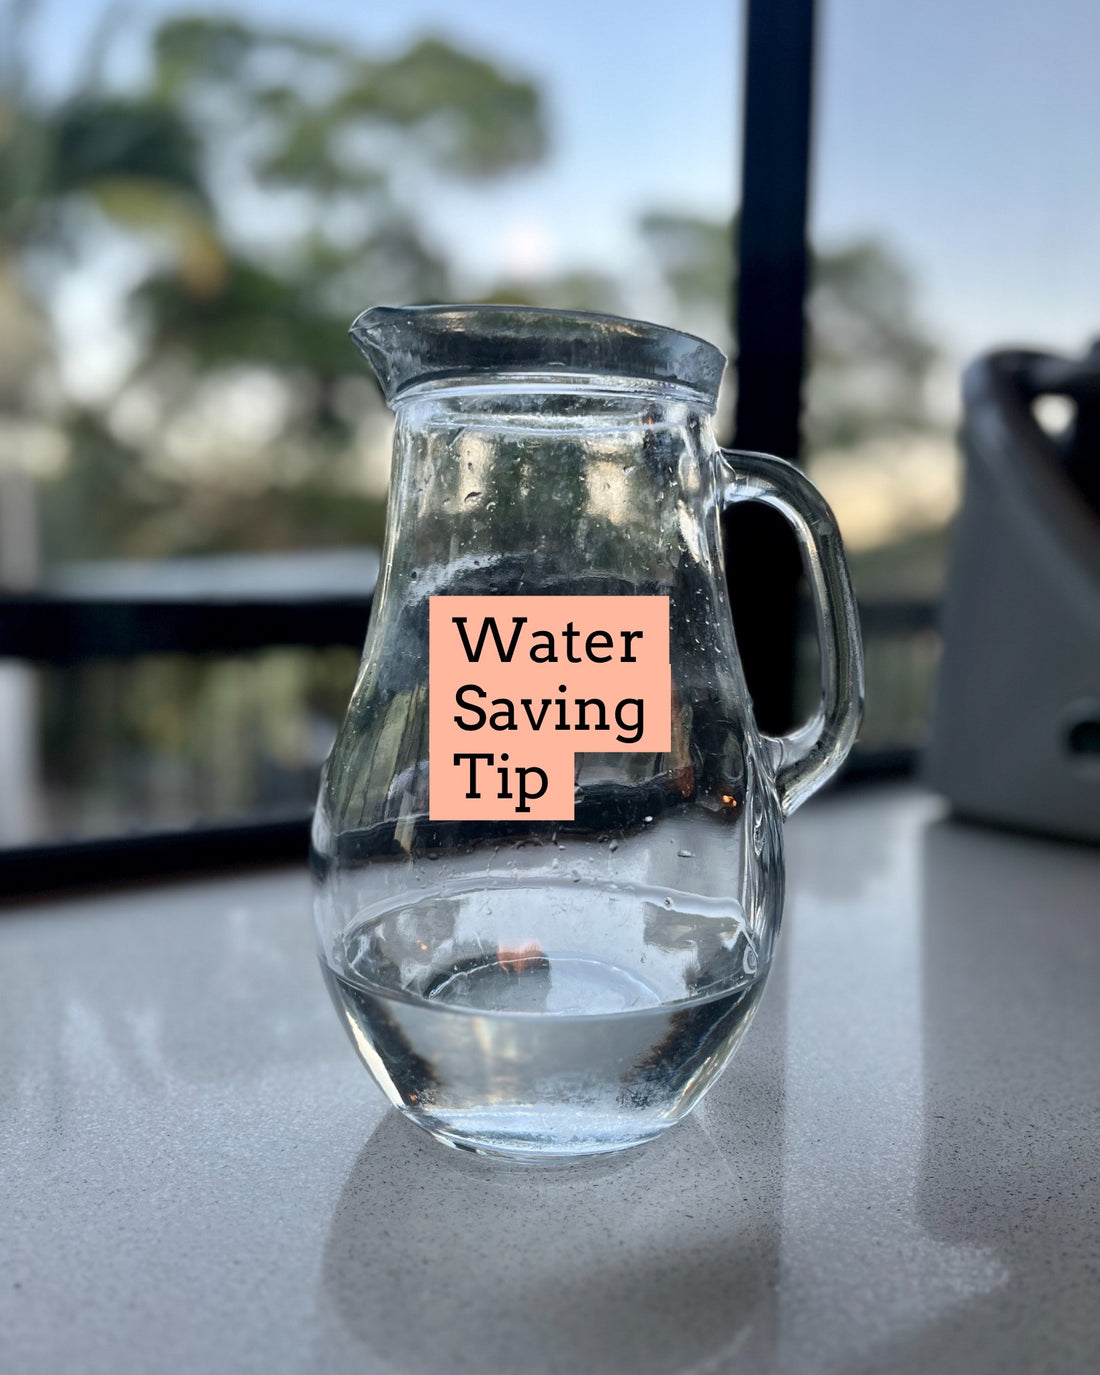 Water Saving Tip